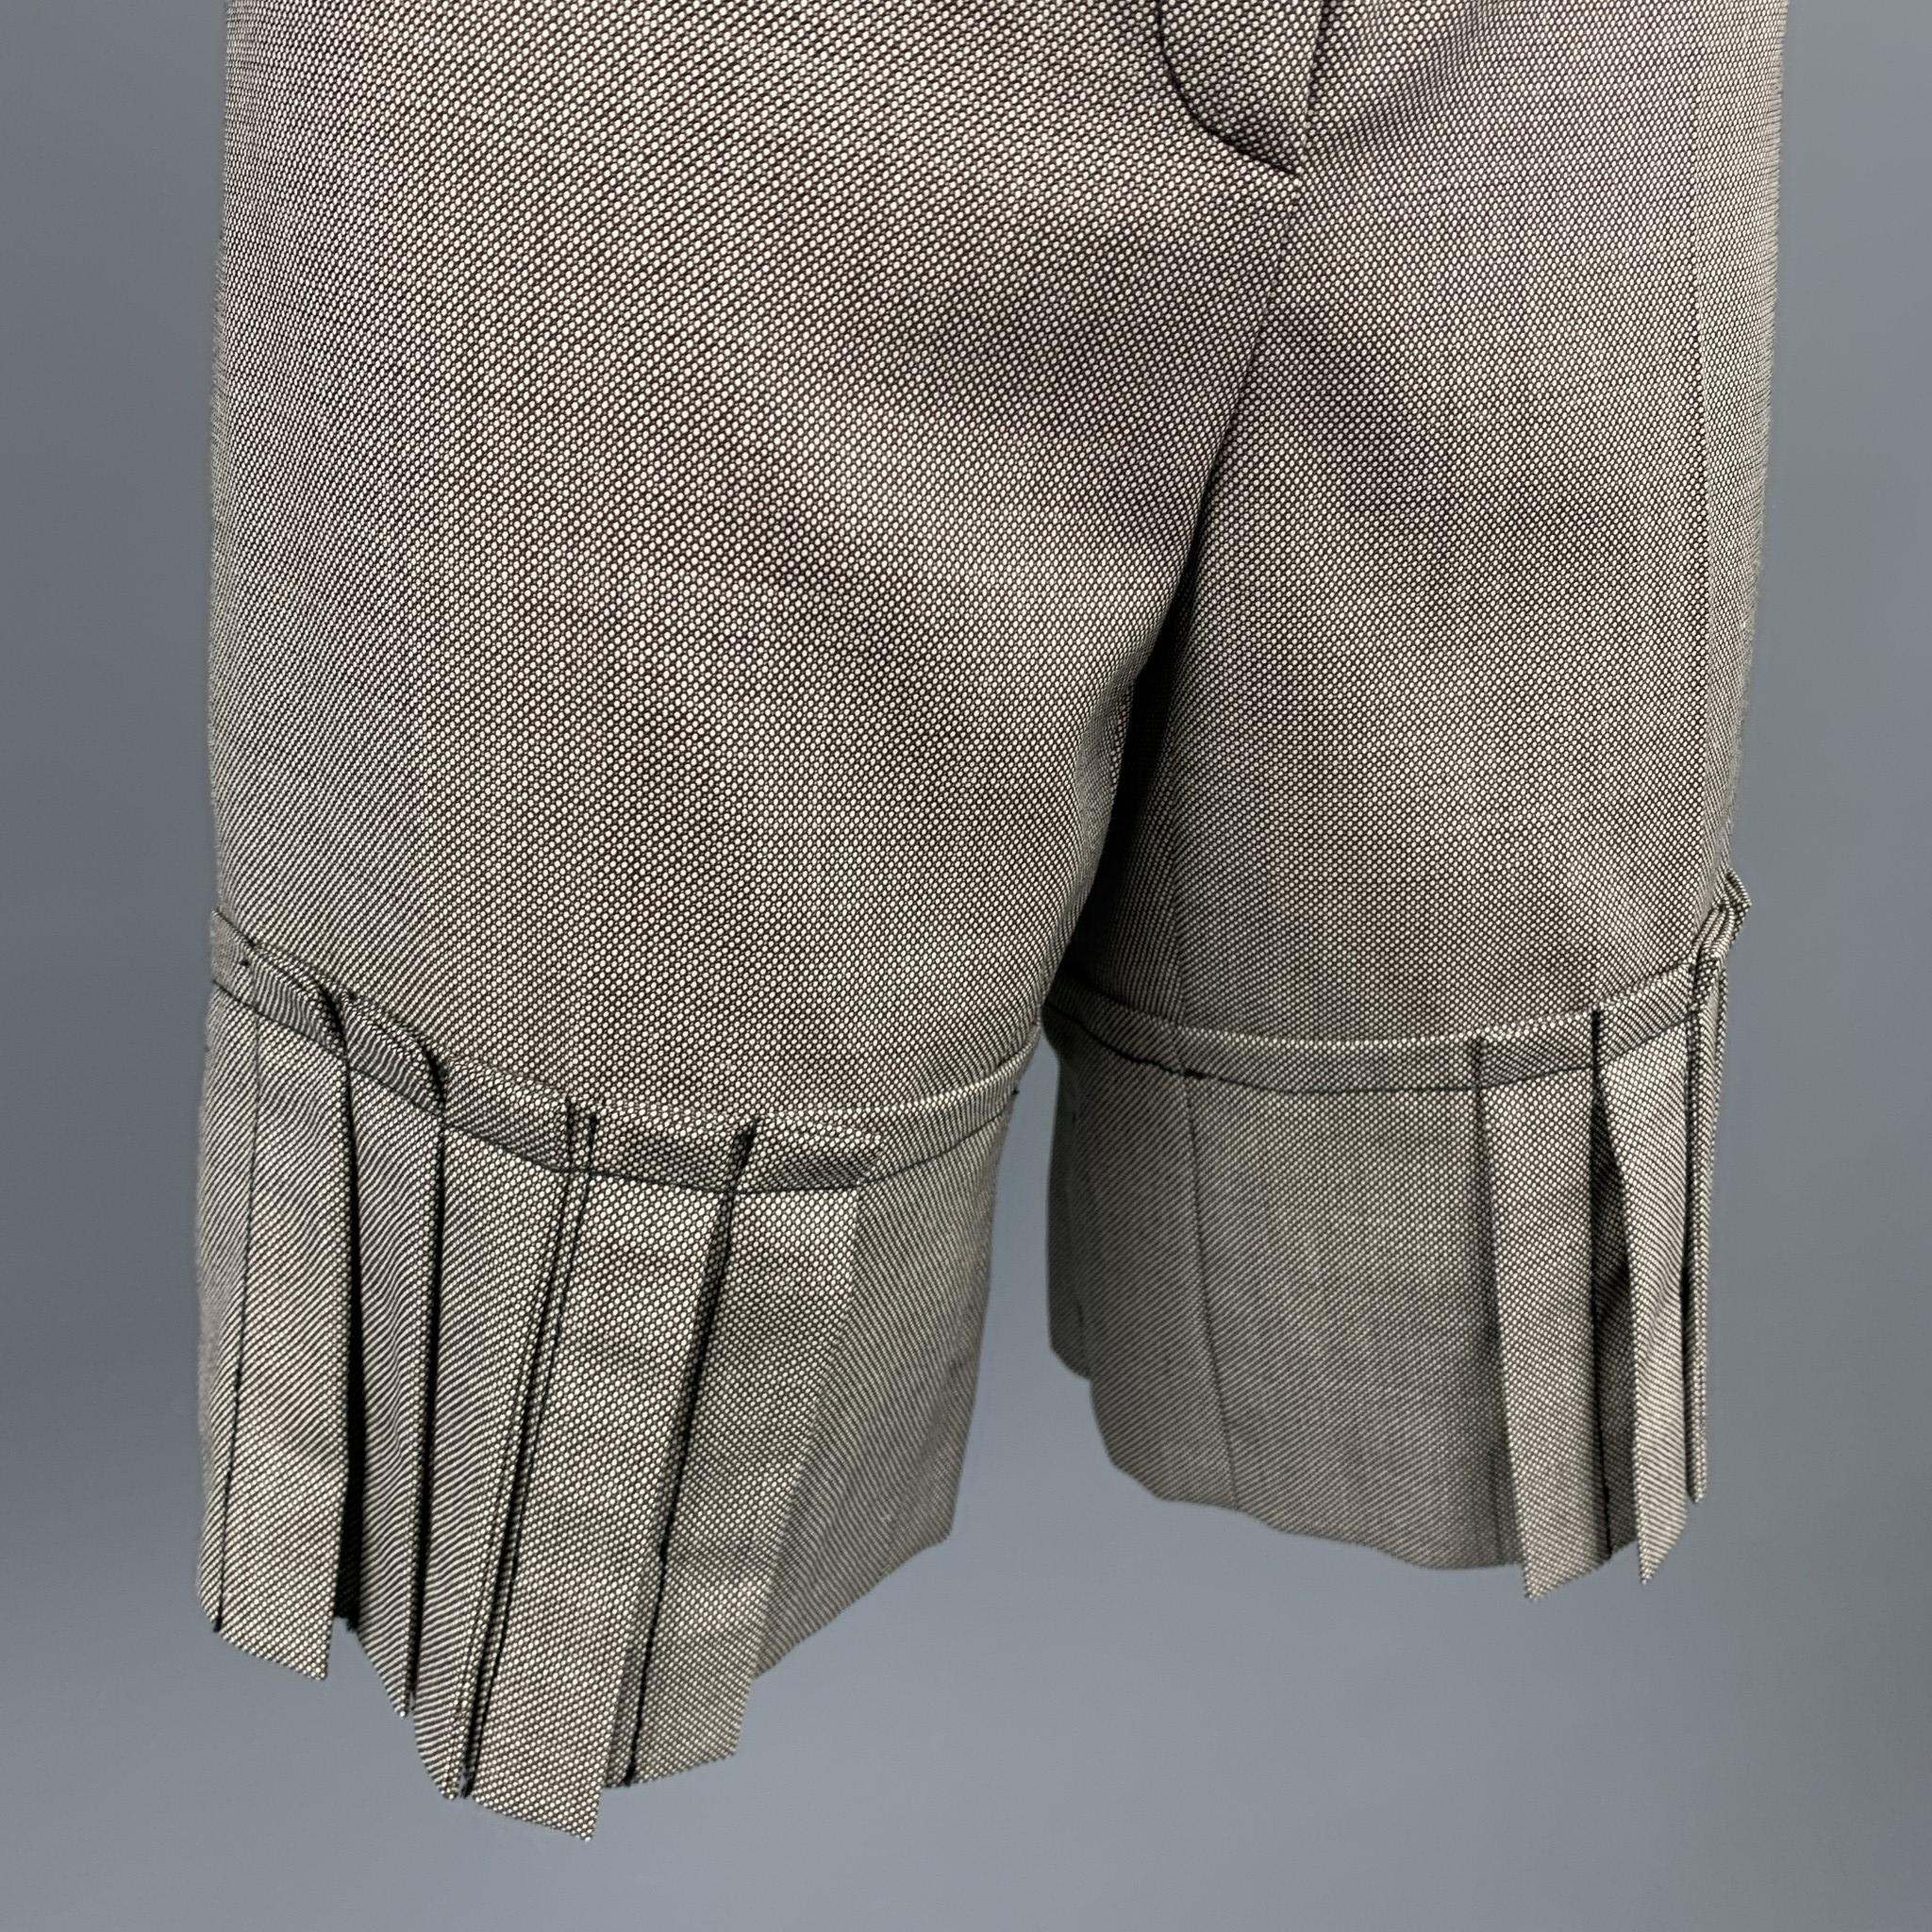 brown tweed shorts